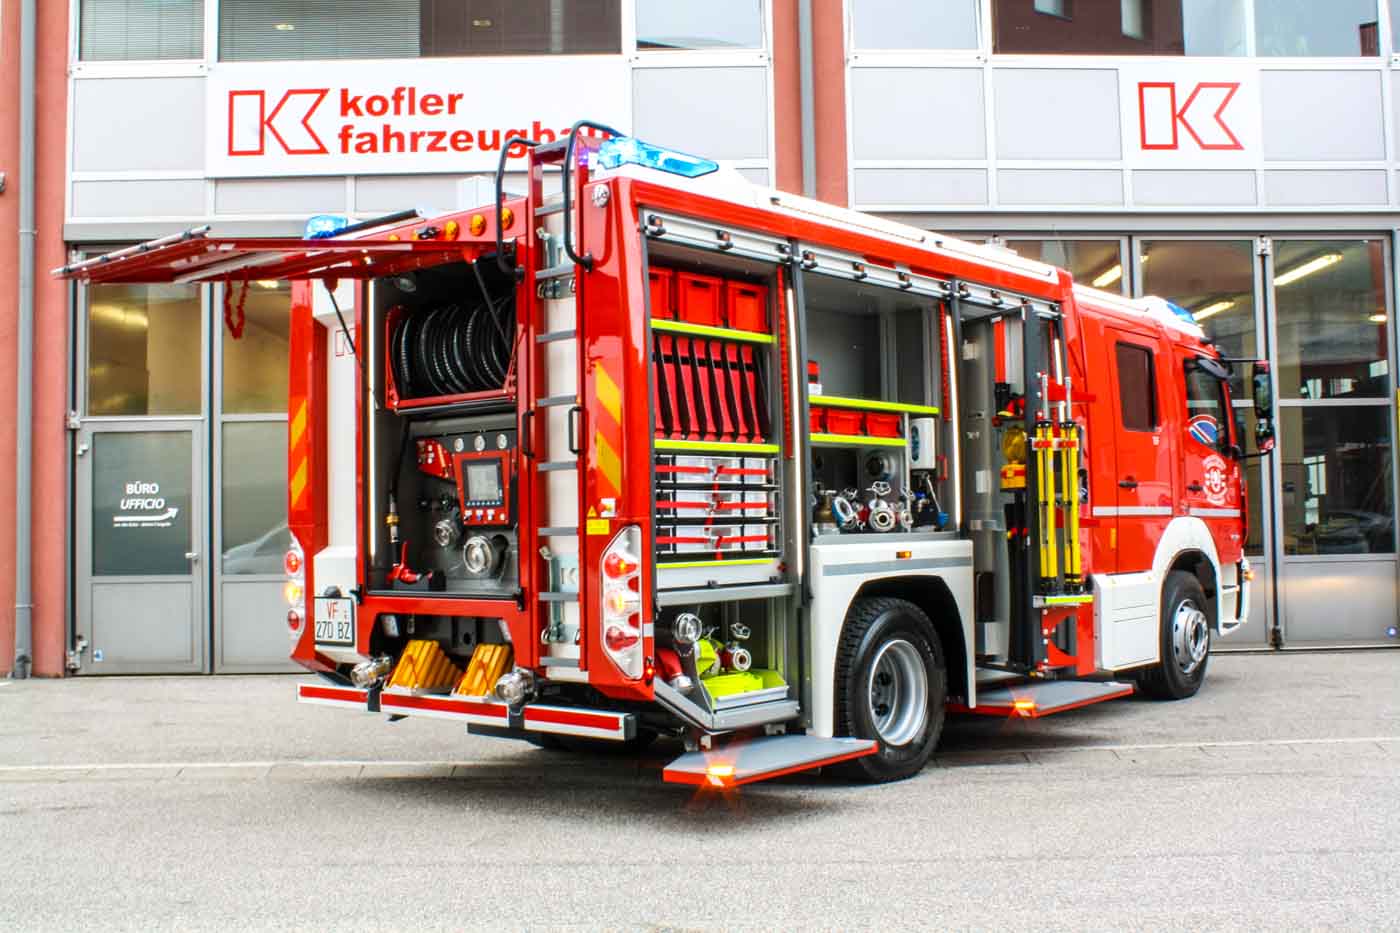 FF-Oberau-Haslach-Kofler-Fahrzeugbau